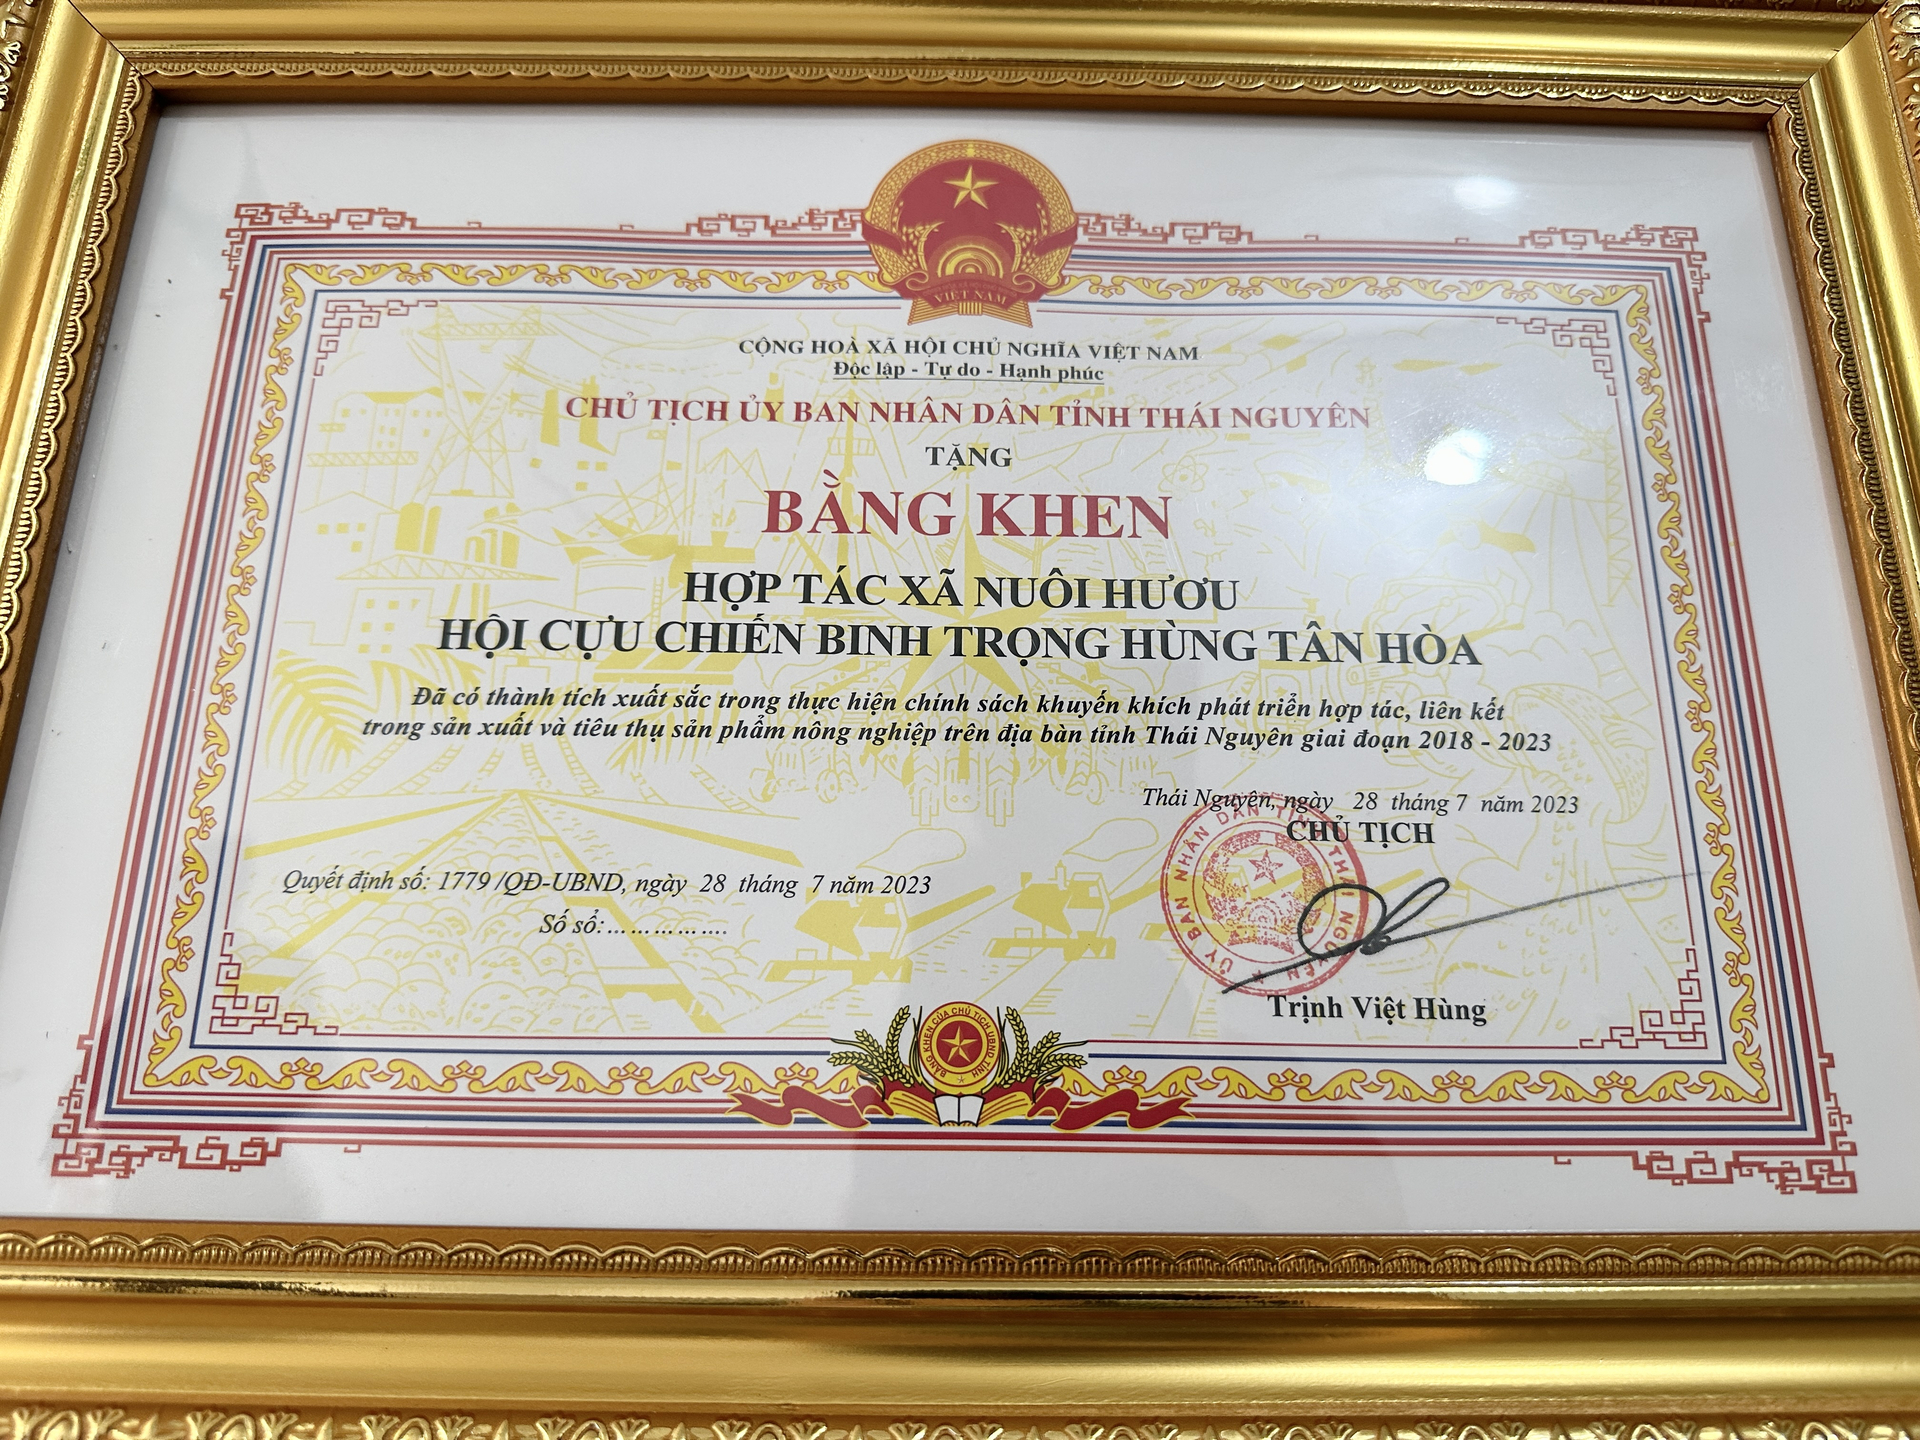 Nhiều năm liền, HTX Trọng Hùng Tân Hòa nhận được bằng khen của UBND tỉnh Thái Nguyên nhờ thành tích xuất sắc trong thực hiện chính sách khuyến khích phát triển hợp tác, liên kết trong sản xuất. 